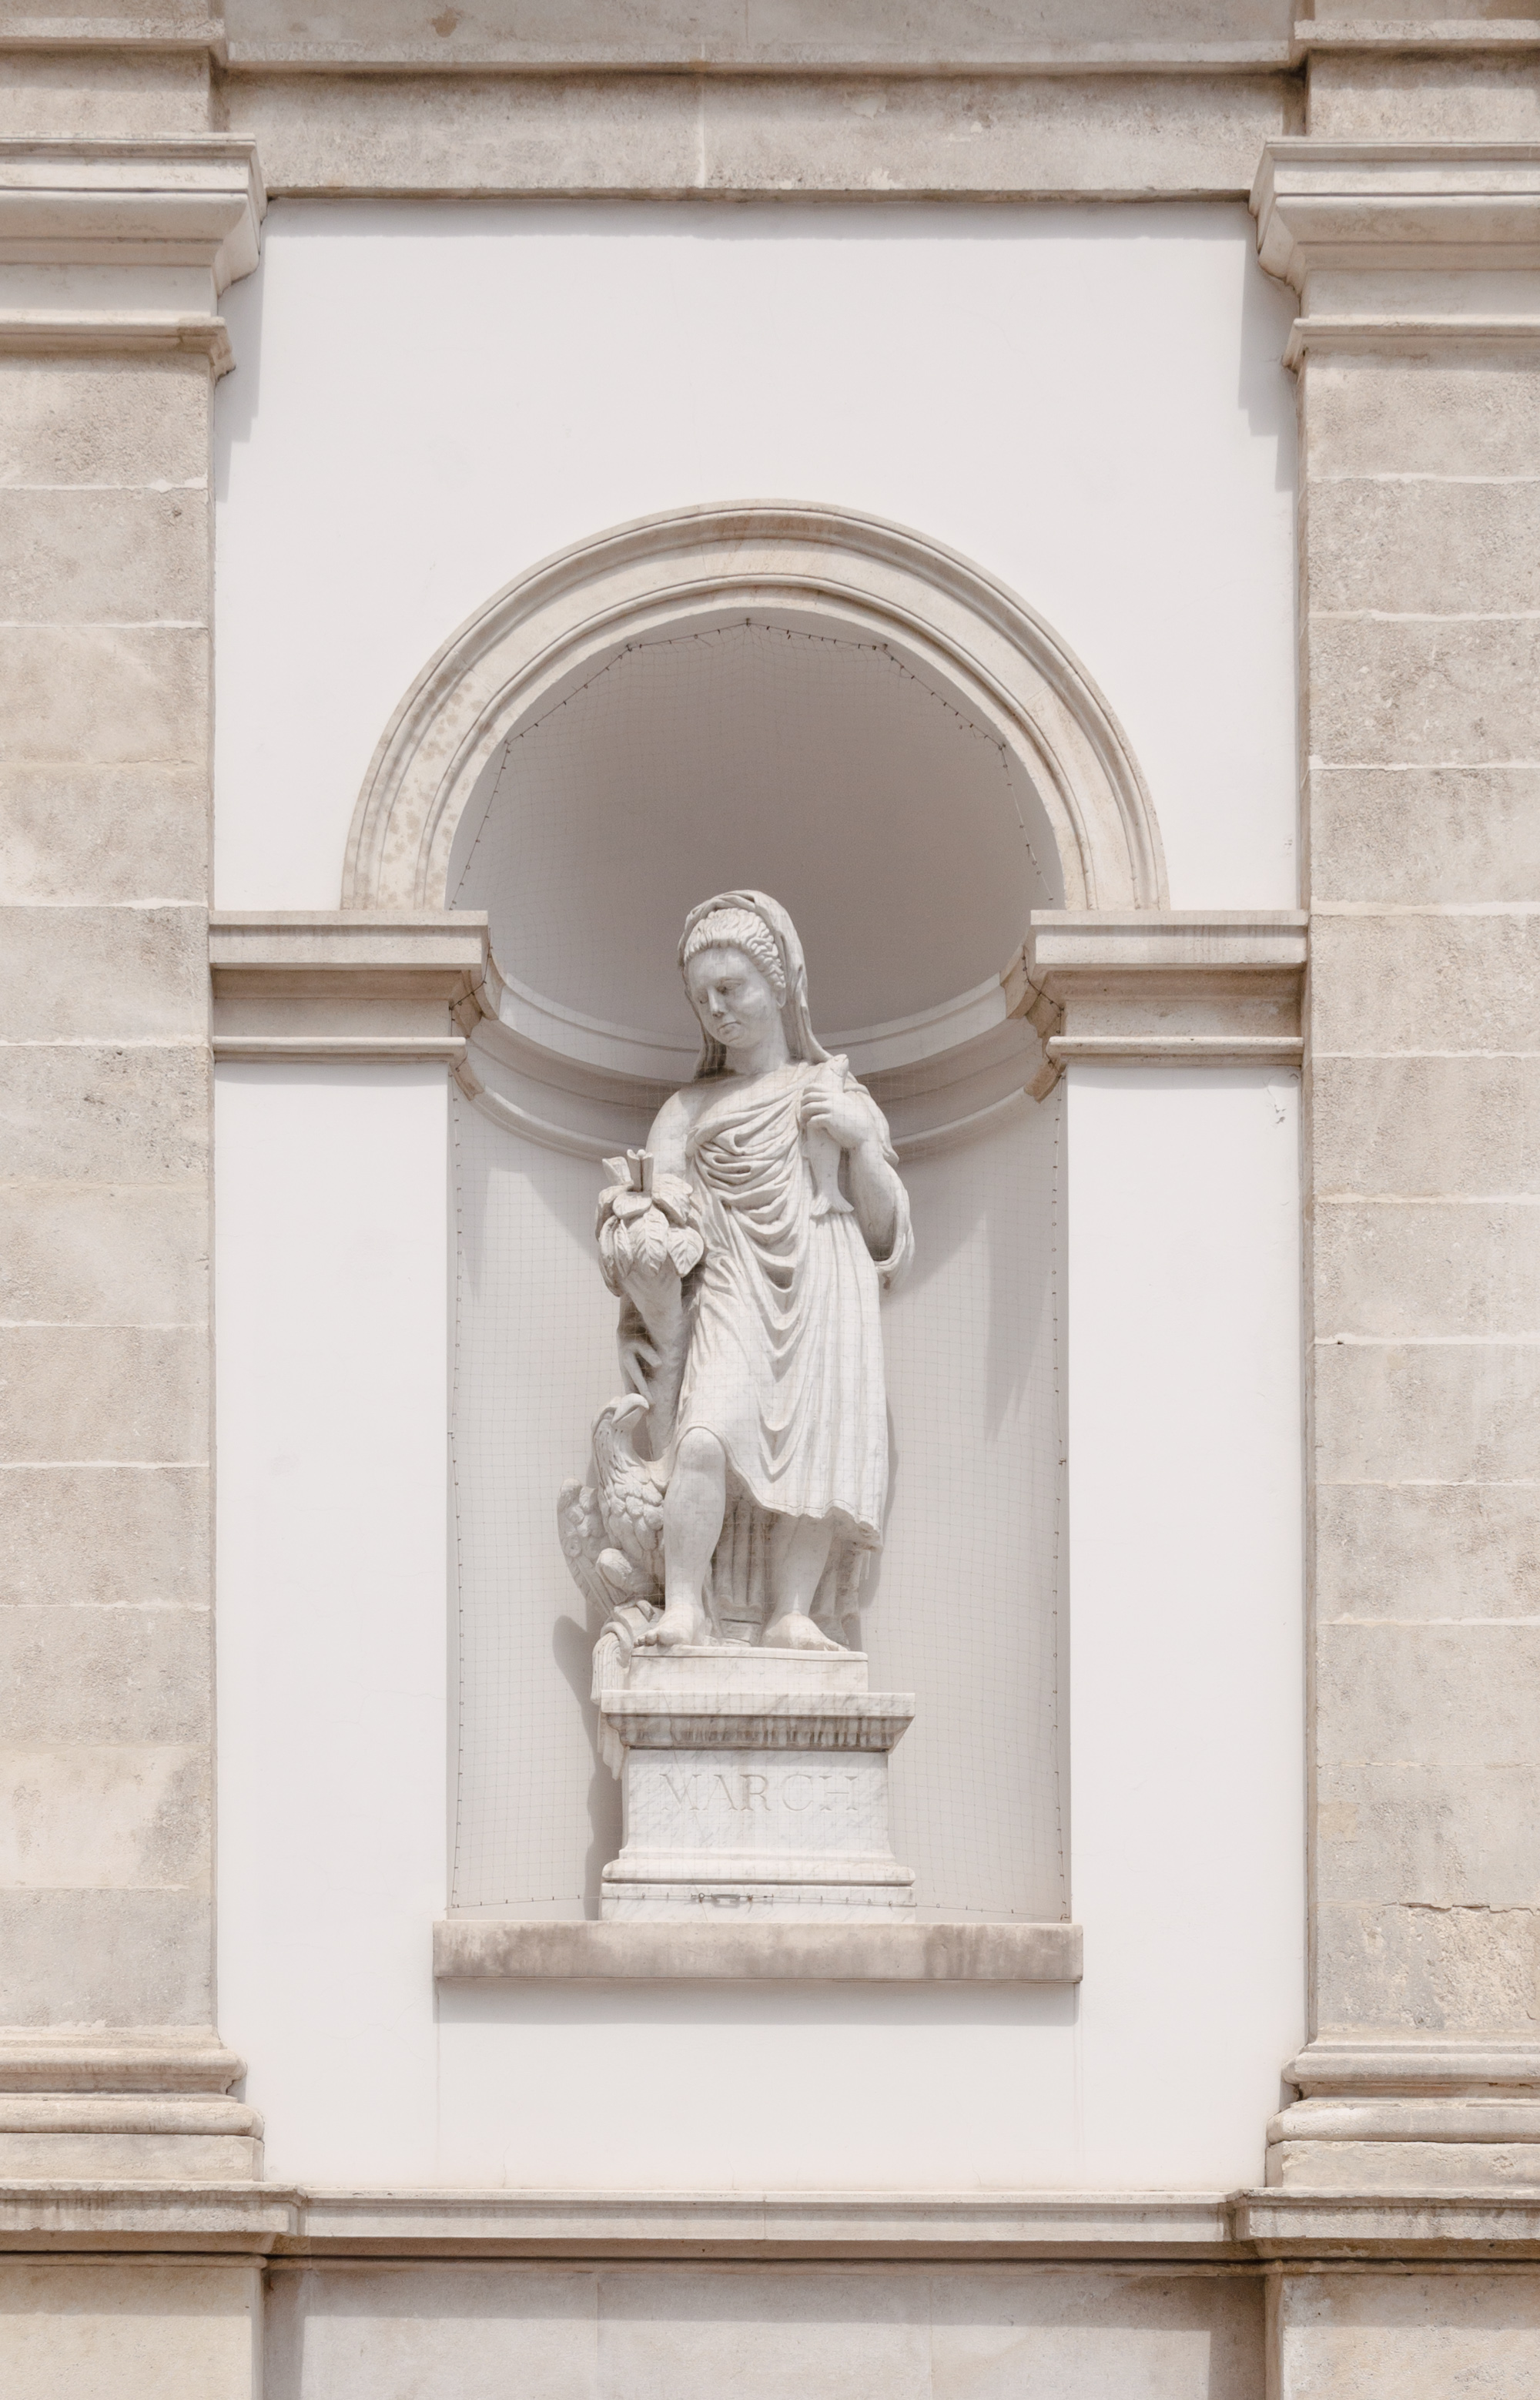 March statue - Albertina bastion - Viena